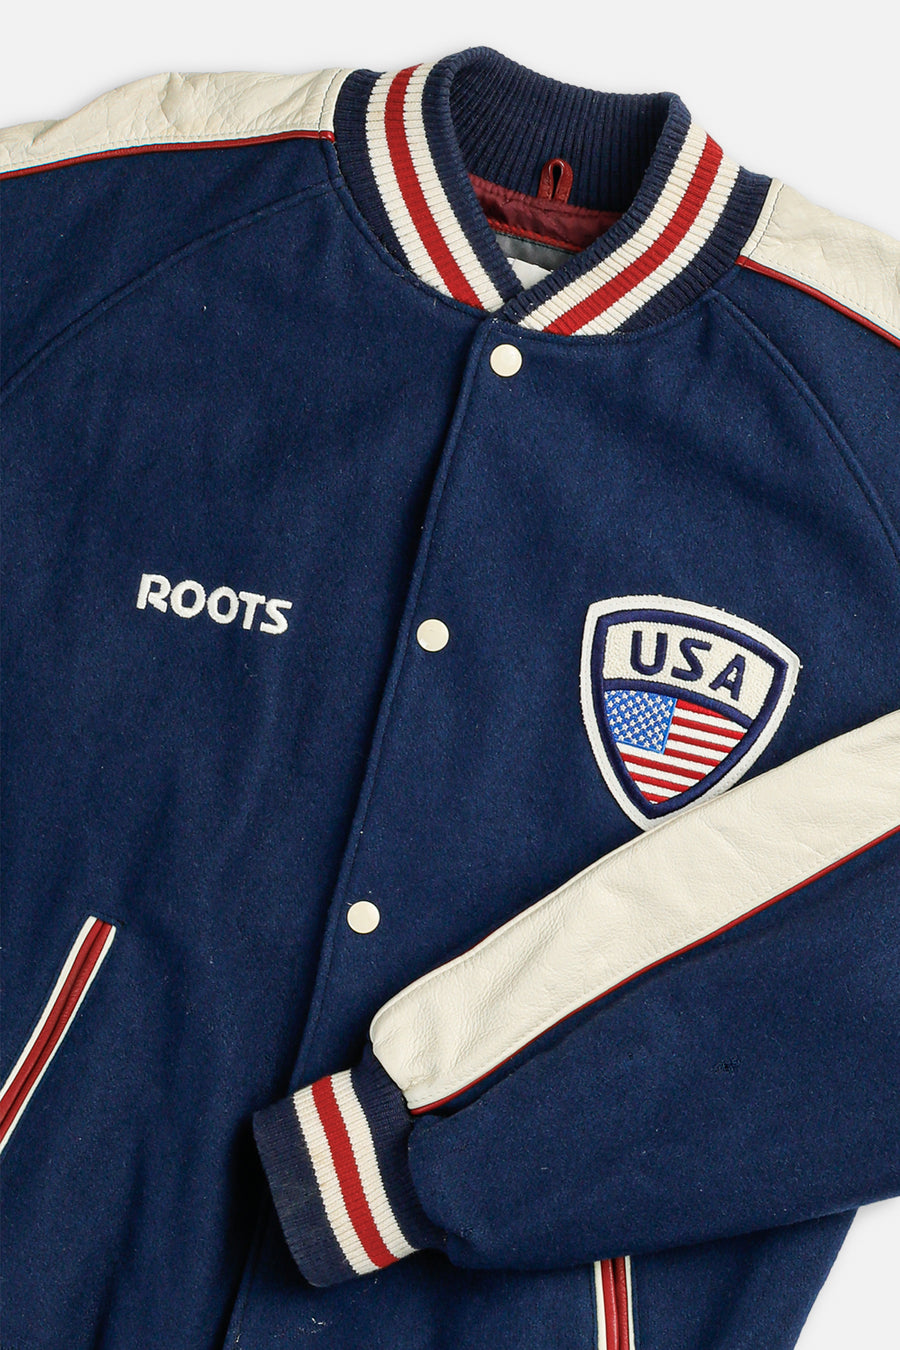 Vintage USA Jacket - XL